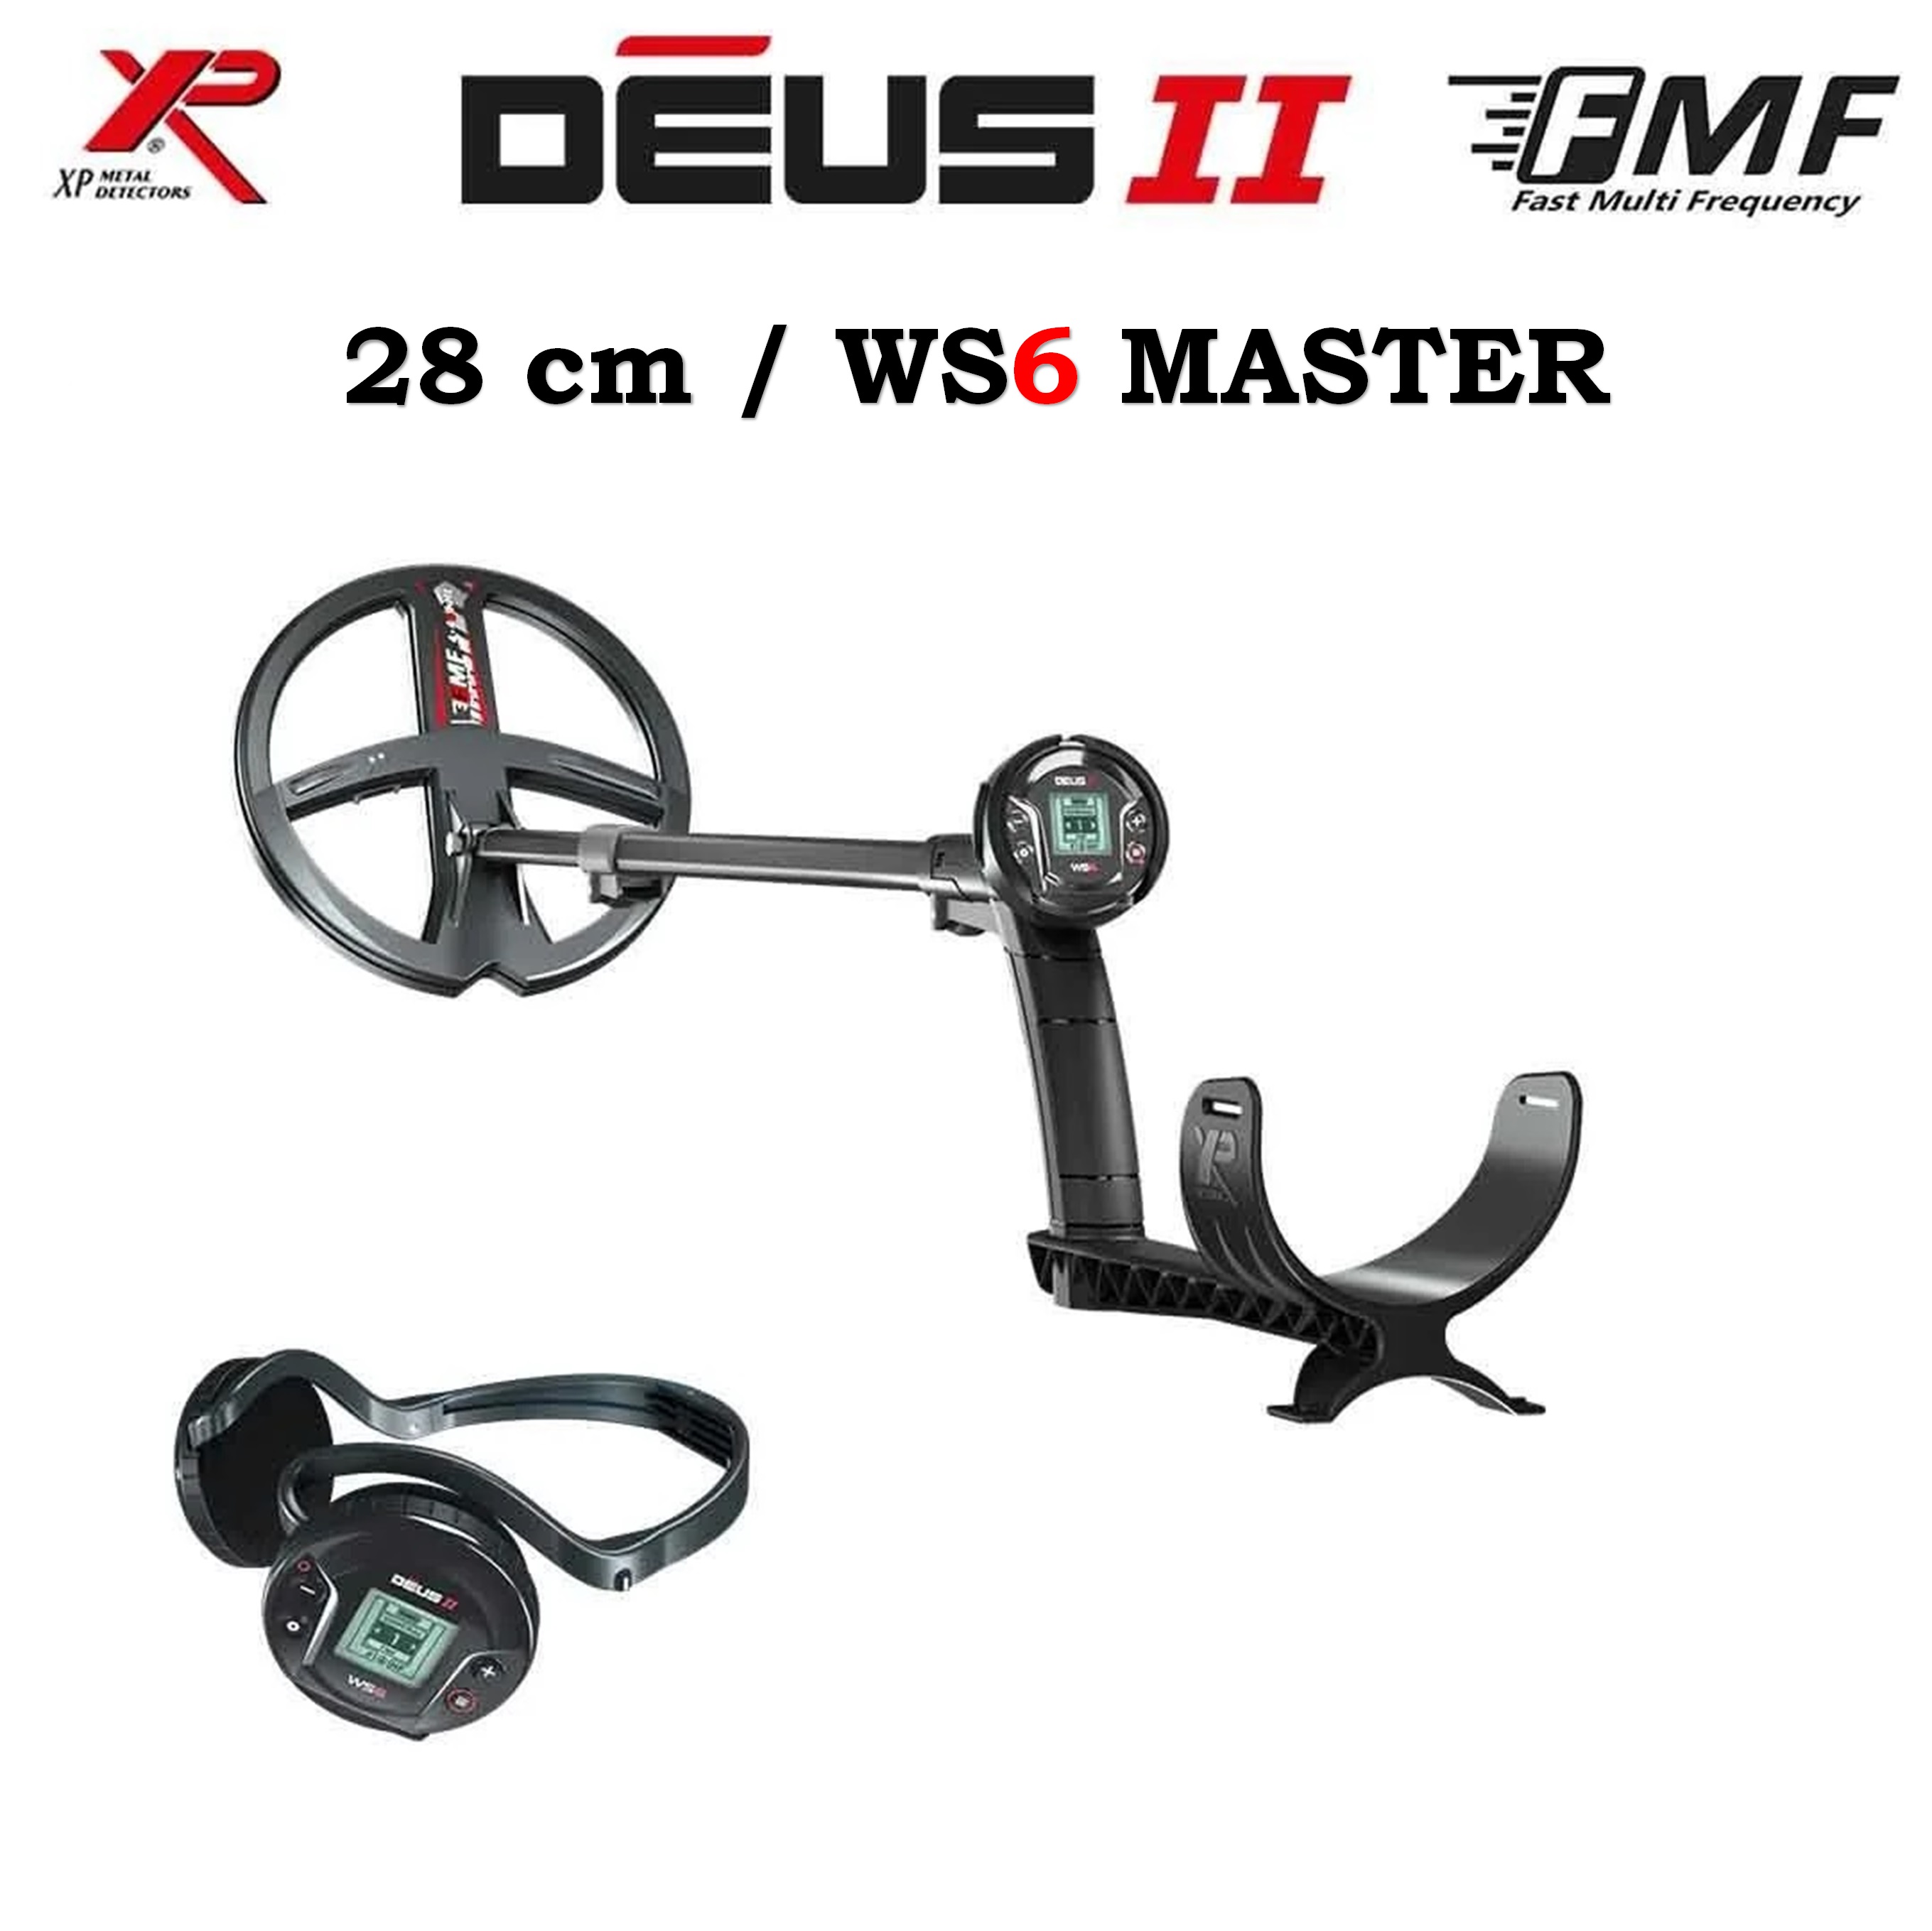 Deus 2 Dedektör - 28cm FMF Başlık, WS6 Master